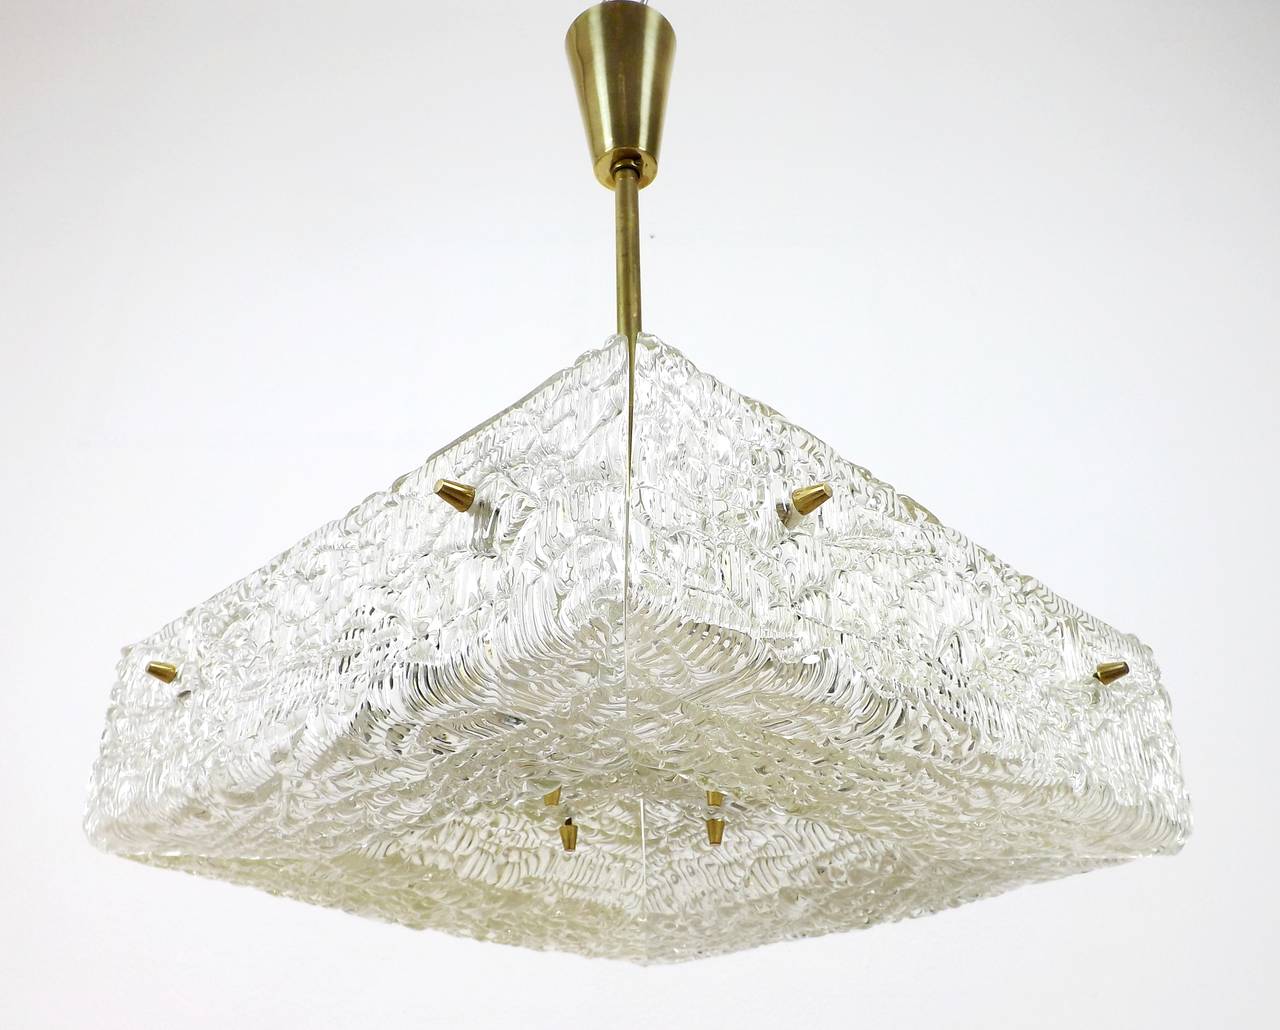 Un luminaire en verre texturé et laiton de J.T. Kalmar, Autriche, fabriqué au milieu du siècle, vers 1960 (fin des années 1950 ou début des années 1960).
Un verre pressé carré avec une structure aqueuse est divisé en quatre parties qui sont montées